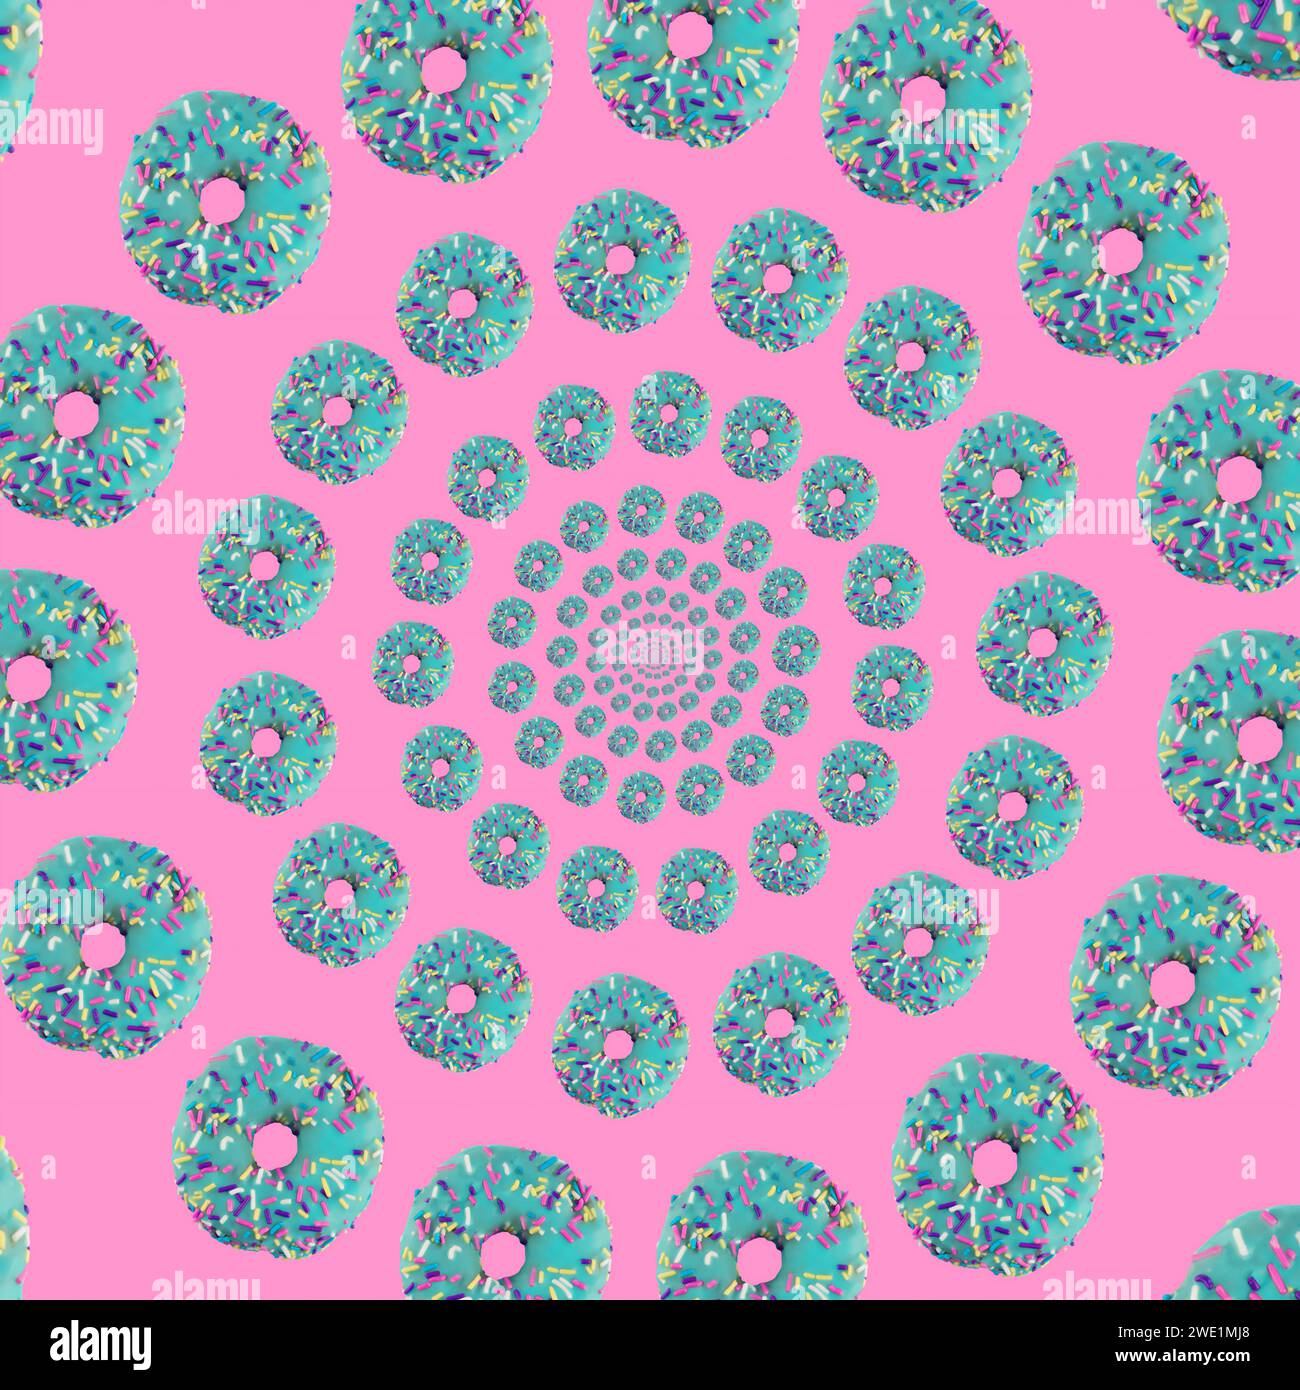 Beignets bleu sarcelle avec des saupoudrages spiralant en cercles sur un fond rose Banque D'Images